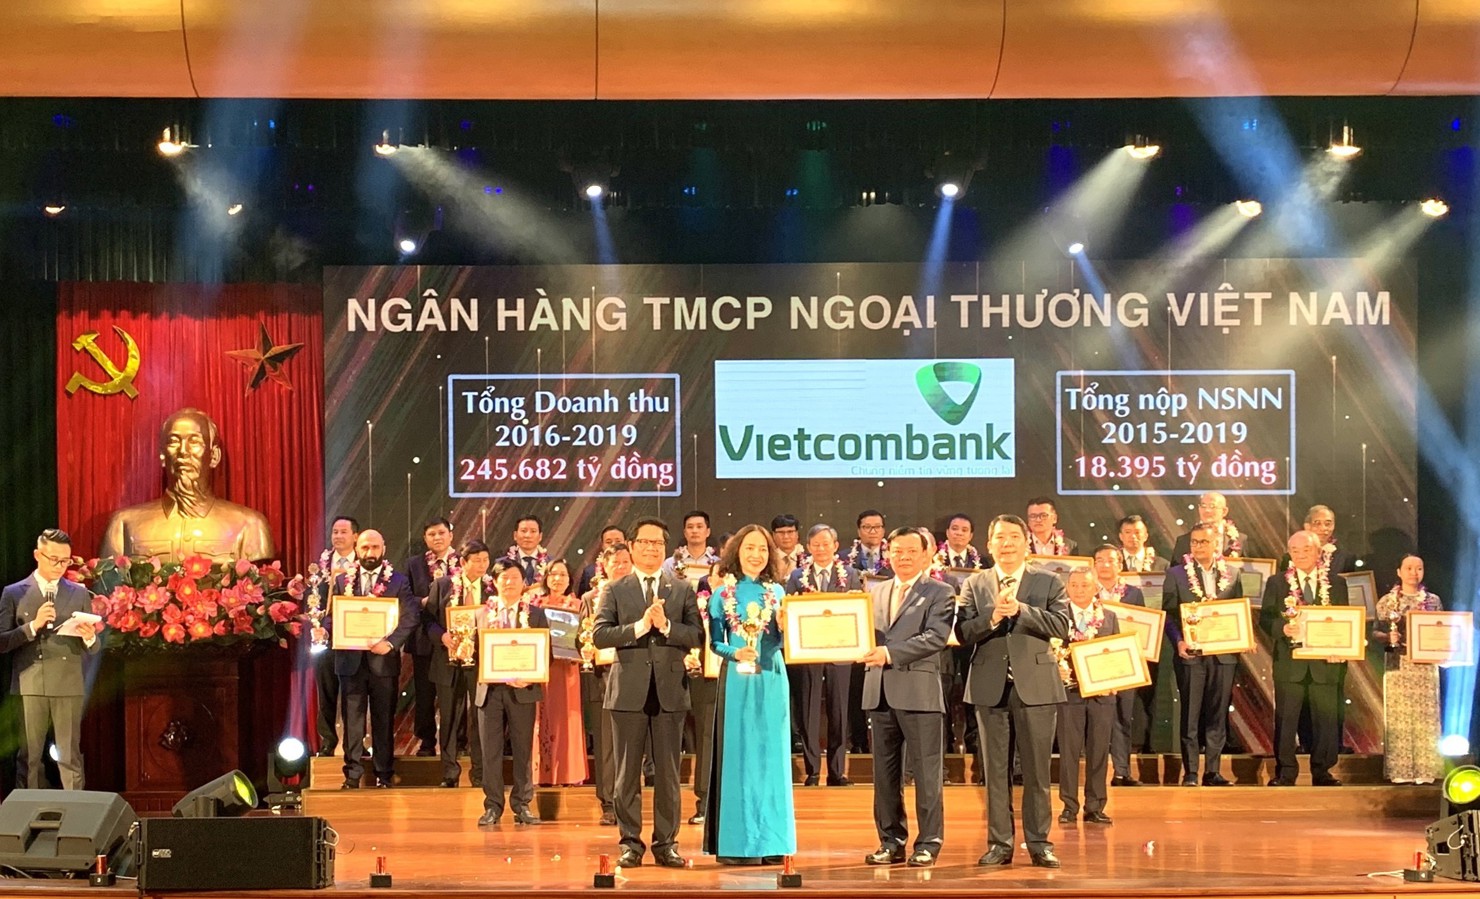 Bộ trưởng Bộ Tài chính Đinh Tiến Dũng trao tặng Bằng khen cho bà Nguyễn Thị Kim Oanh – Phó Tổng Giám đốc Vietcombank, đại diện Vietcombank lên sân khấu nhận vinh danh